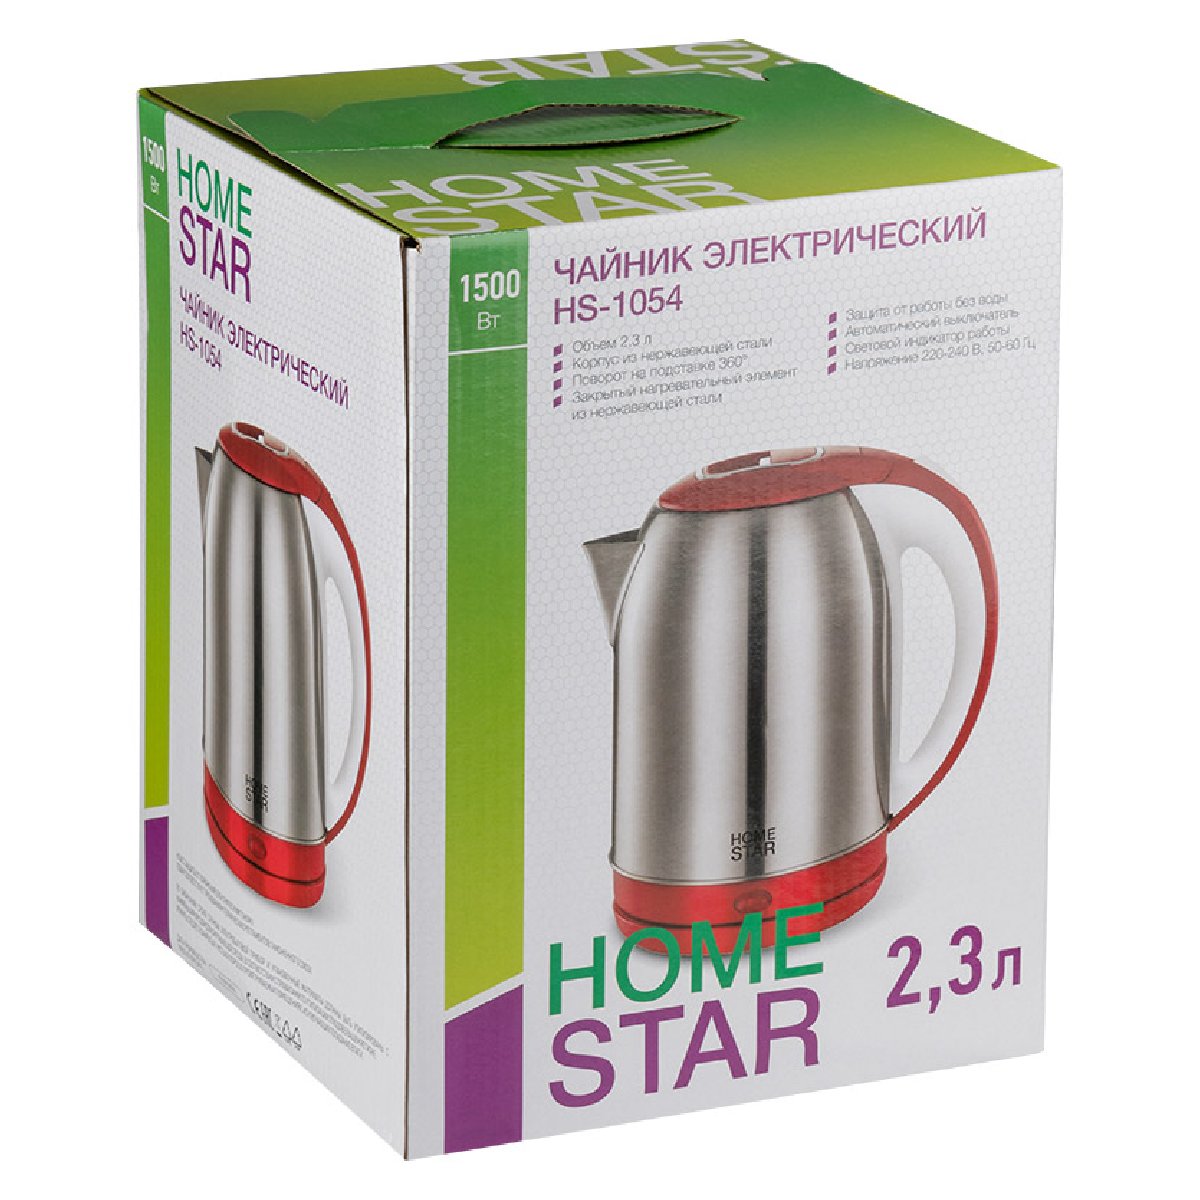 Чайник Homestar HS-1054 (2,3 л) стальной, красный (106466)